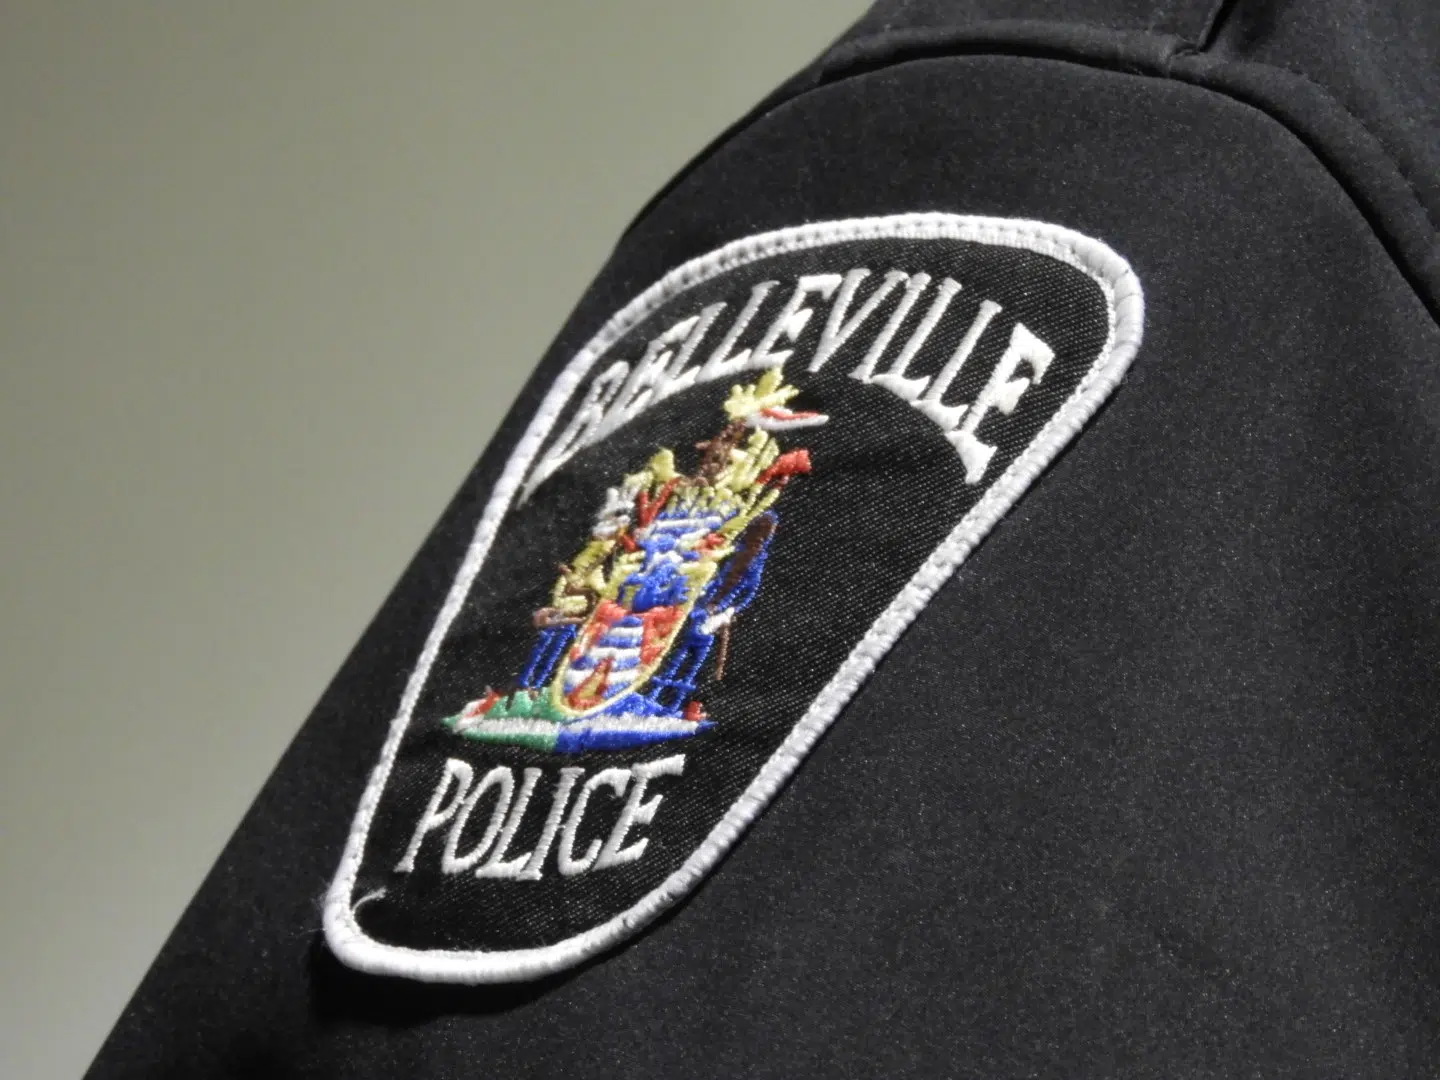 Belleville police report